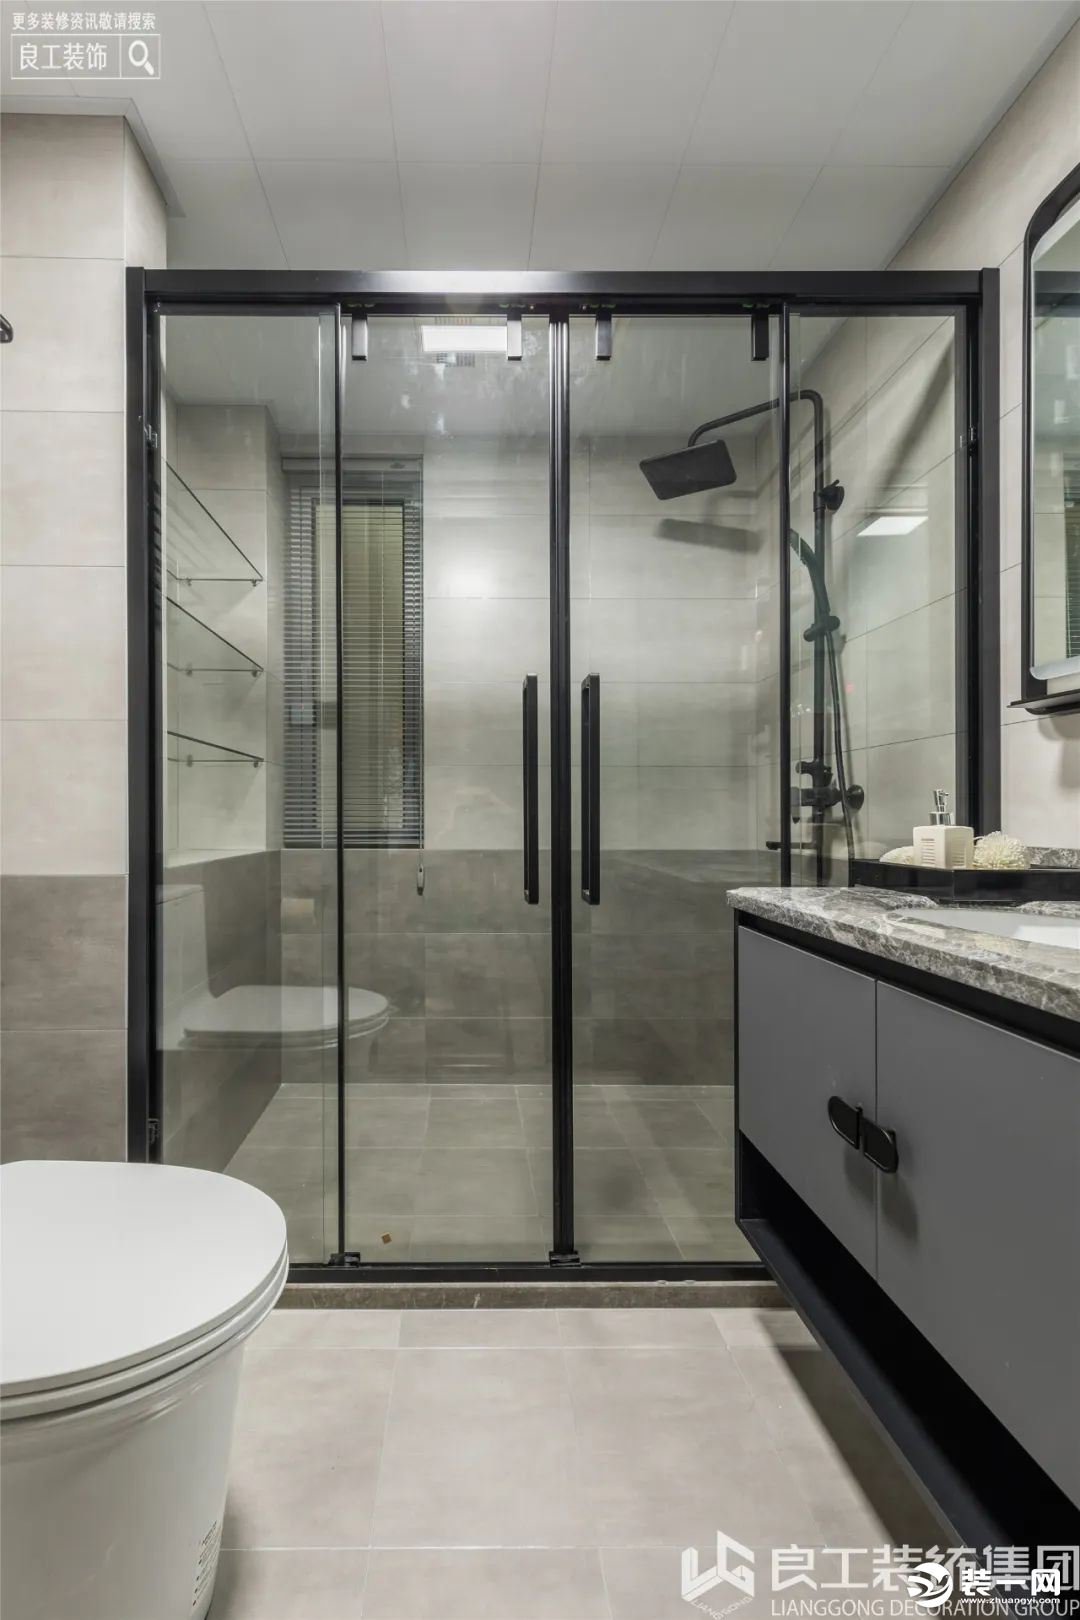 卫生间是以黑色边框作为主线，柜子边框、镜子边框以及玻璃移门的边框都是选用的黑色，迎合了整体的现代风格